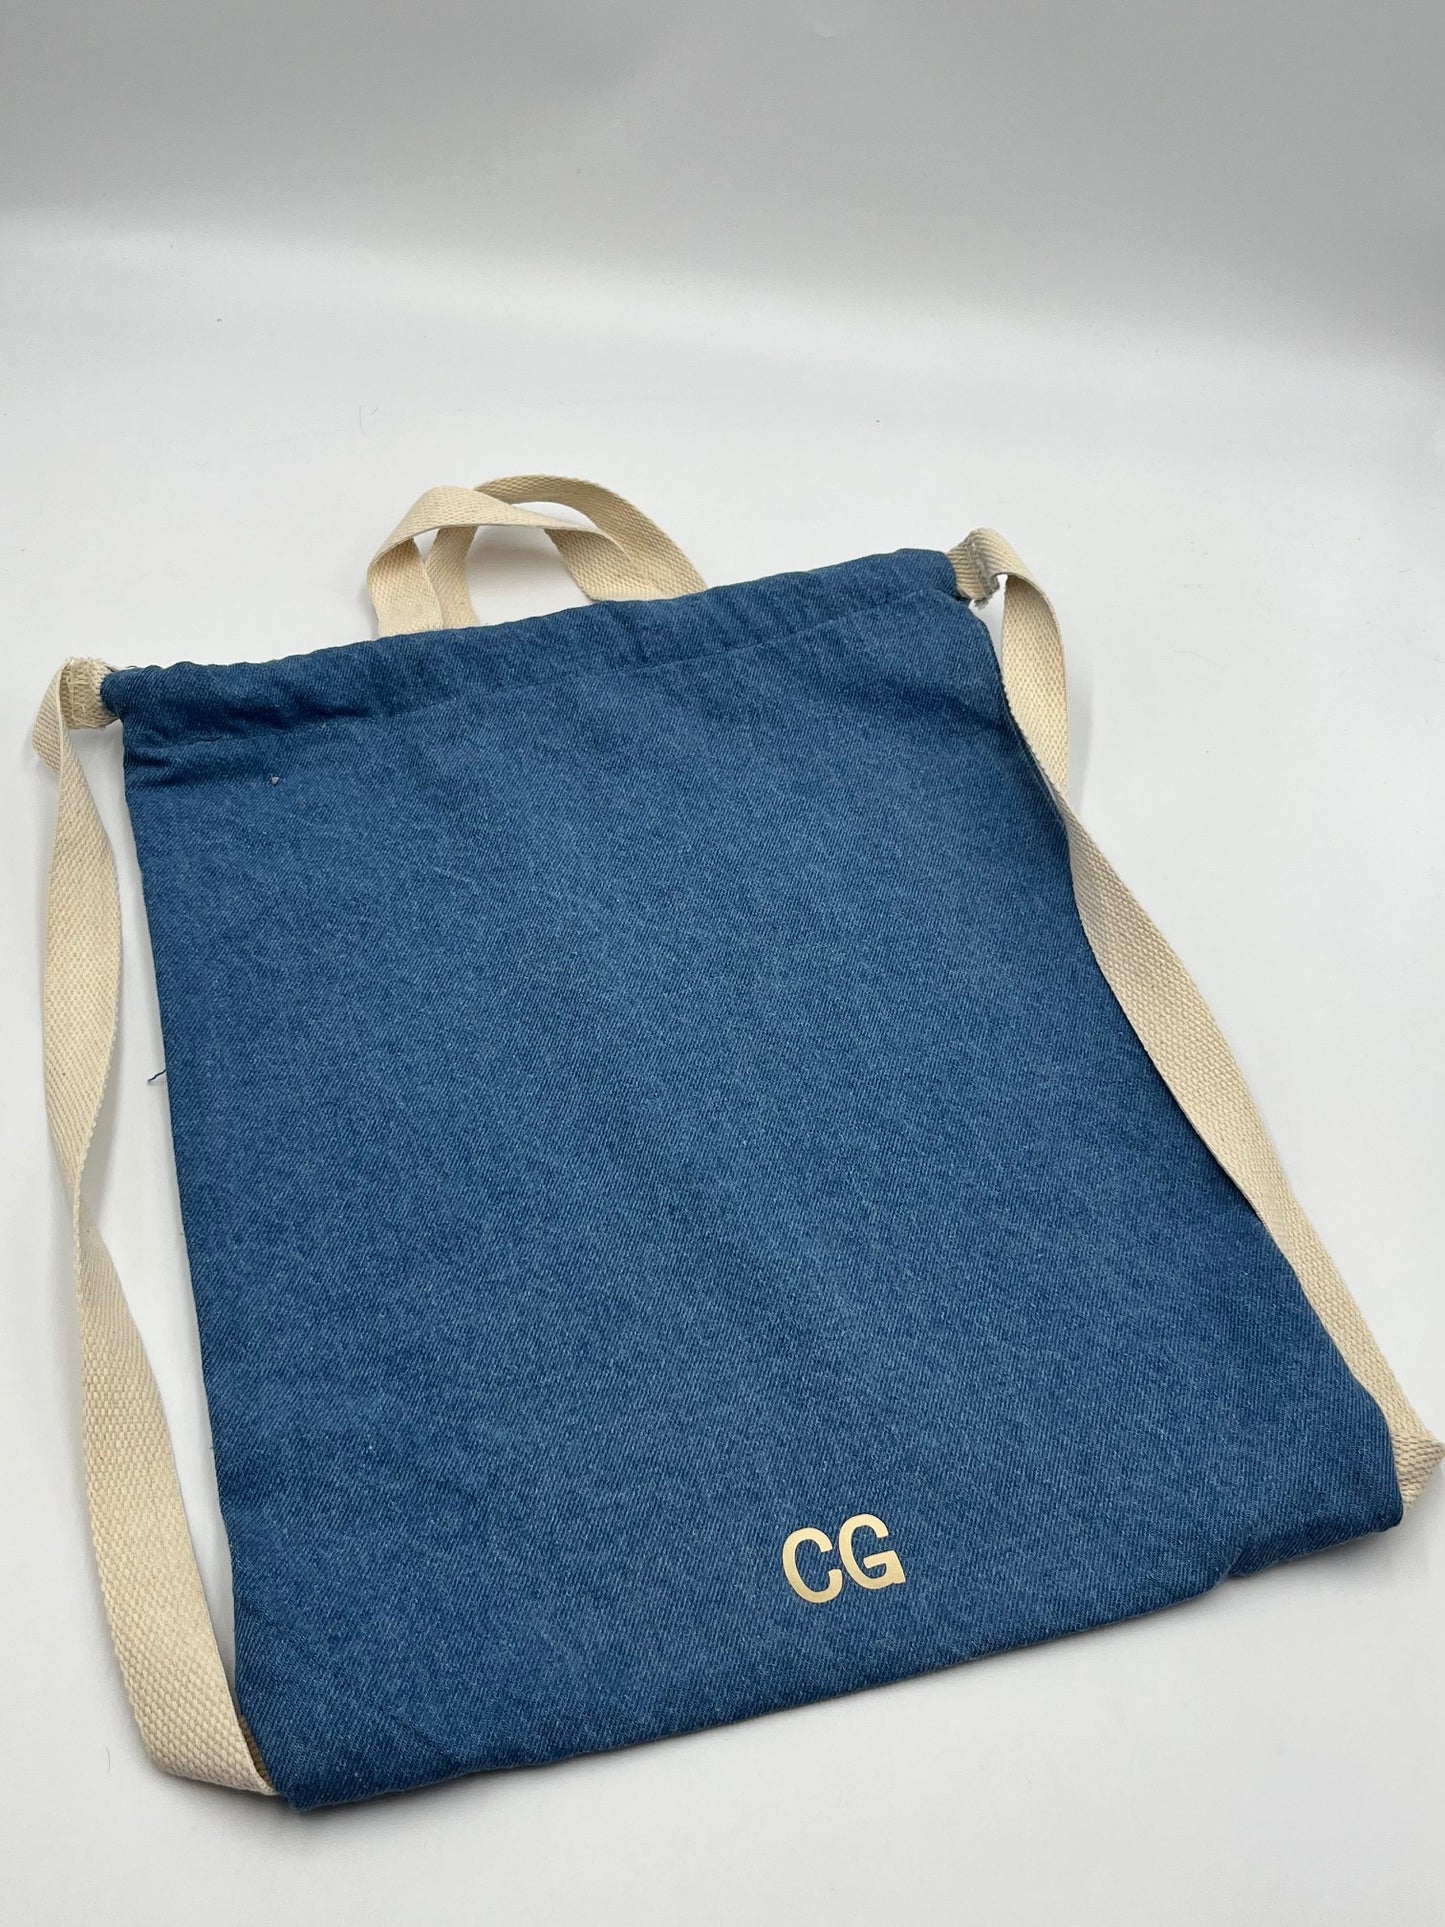 Personalised Denim Drawstring Bag